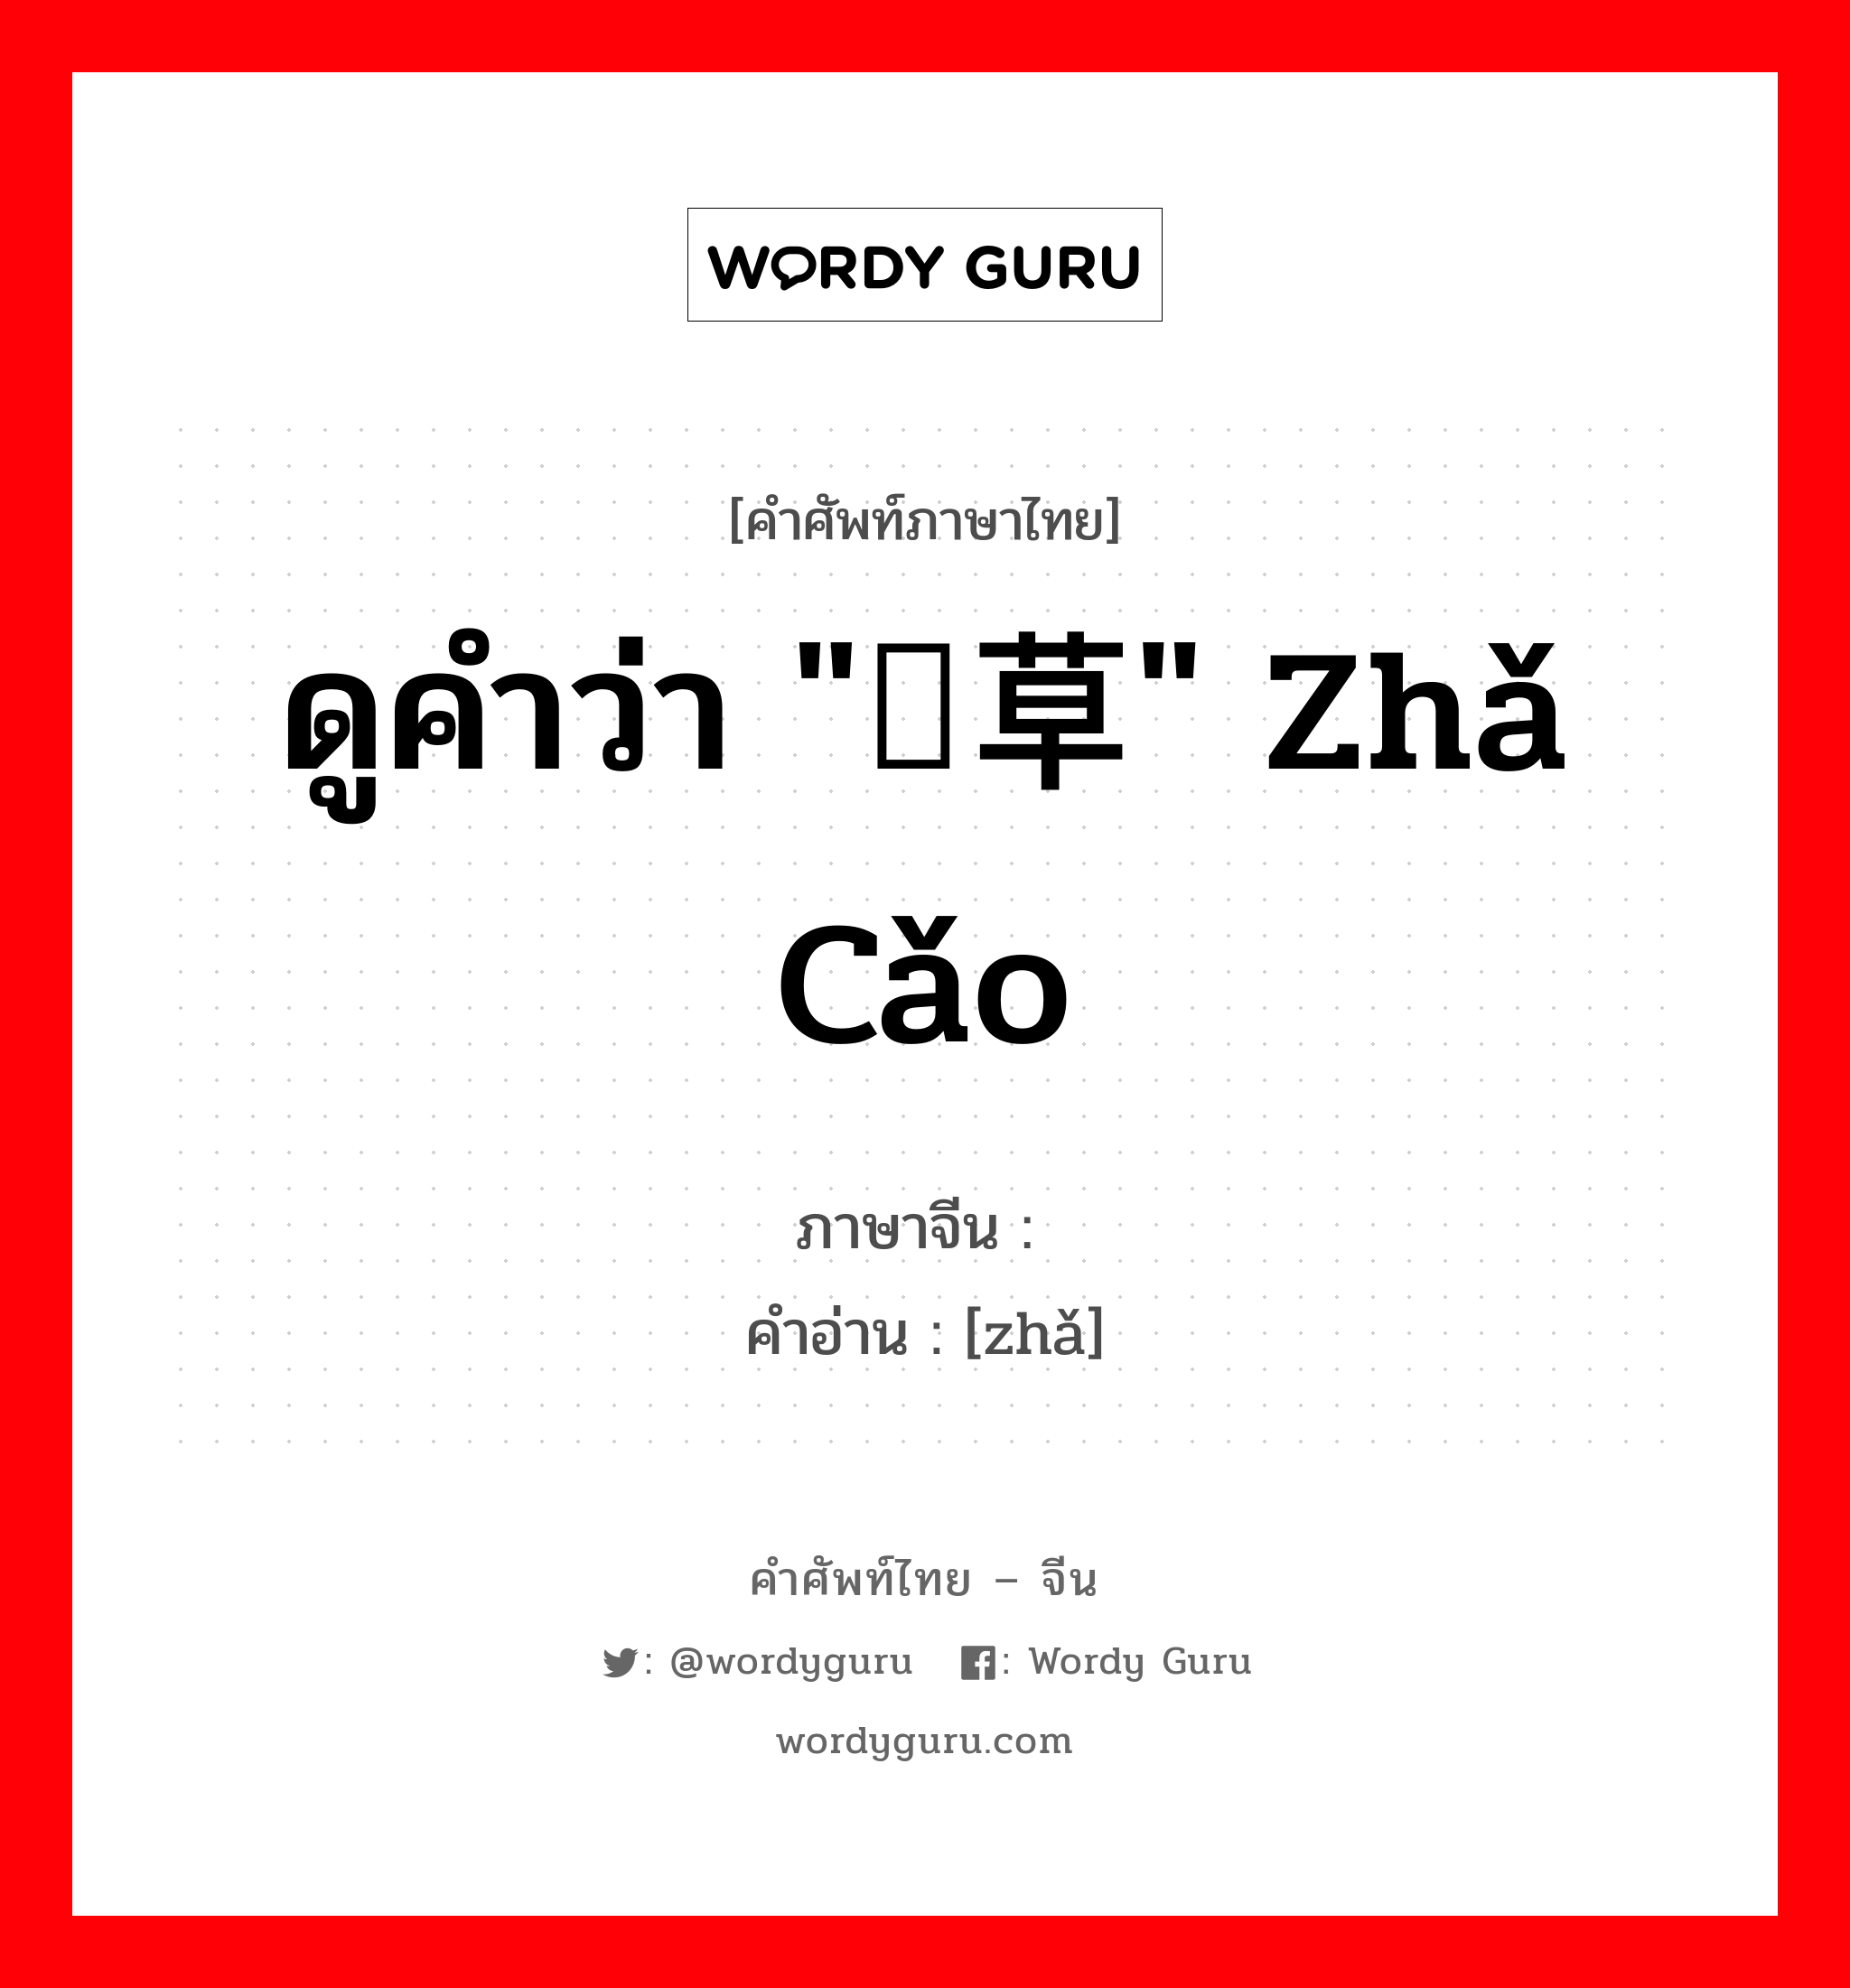 ดูคำว่า "苲草" zhǎ cǎo ภาษาจีนคืออะไร, คำศัพท์ภาษาไทย - จีน ดูคำว่า "苲草" zhǎ cǎo ภาษาจีน 苲 คำอ่าน [zhǎ]